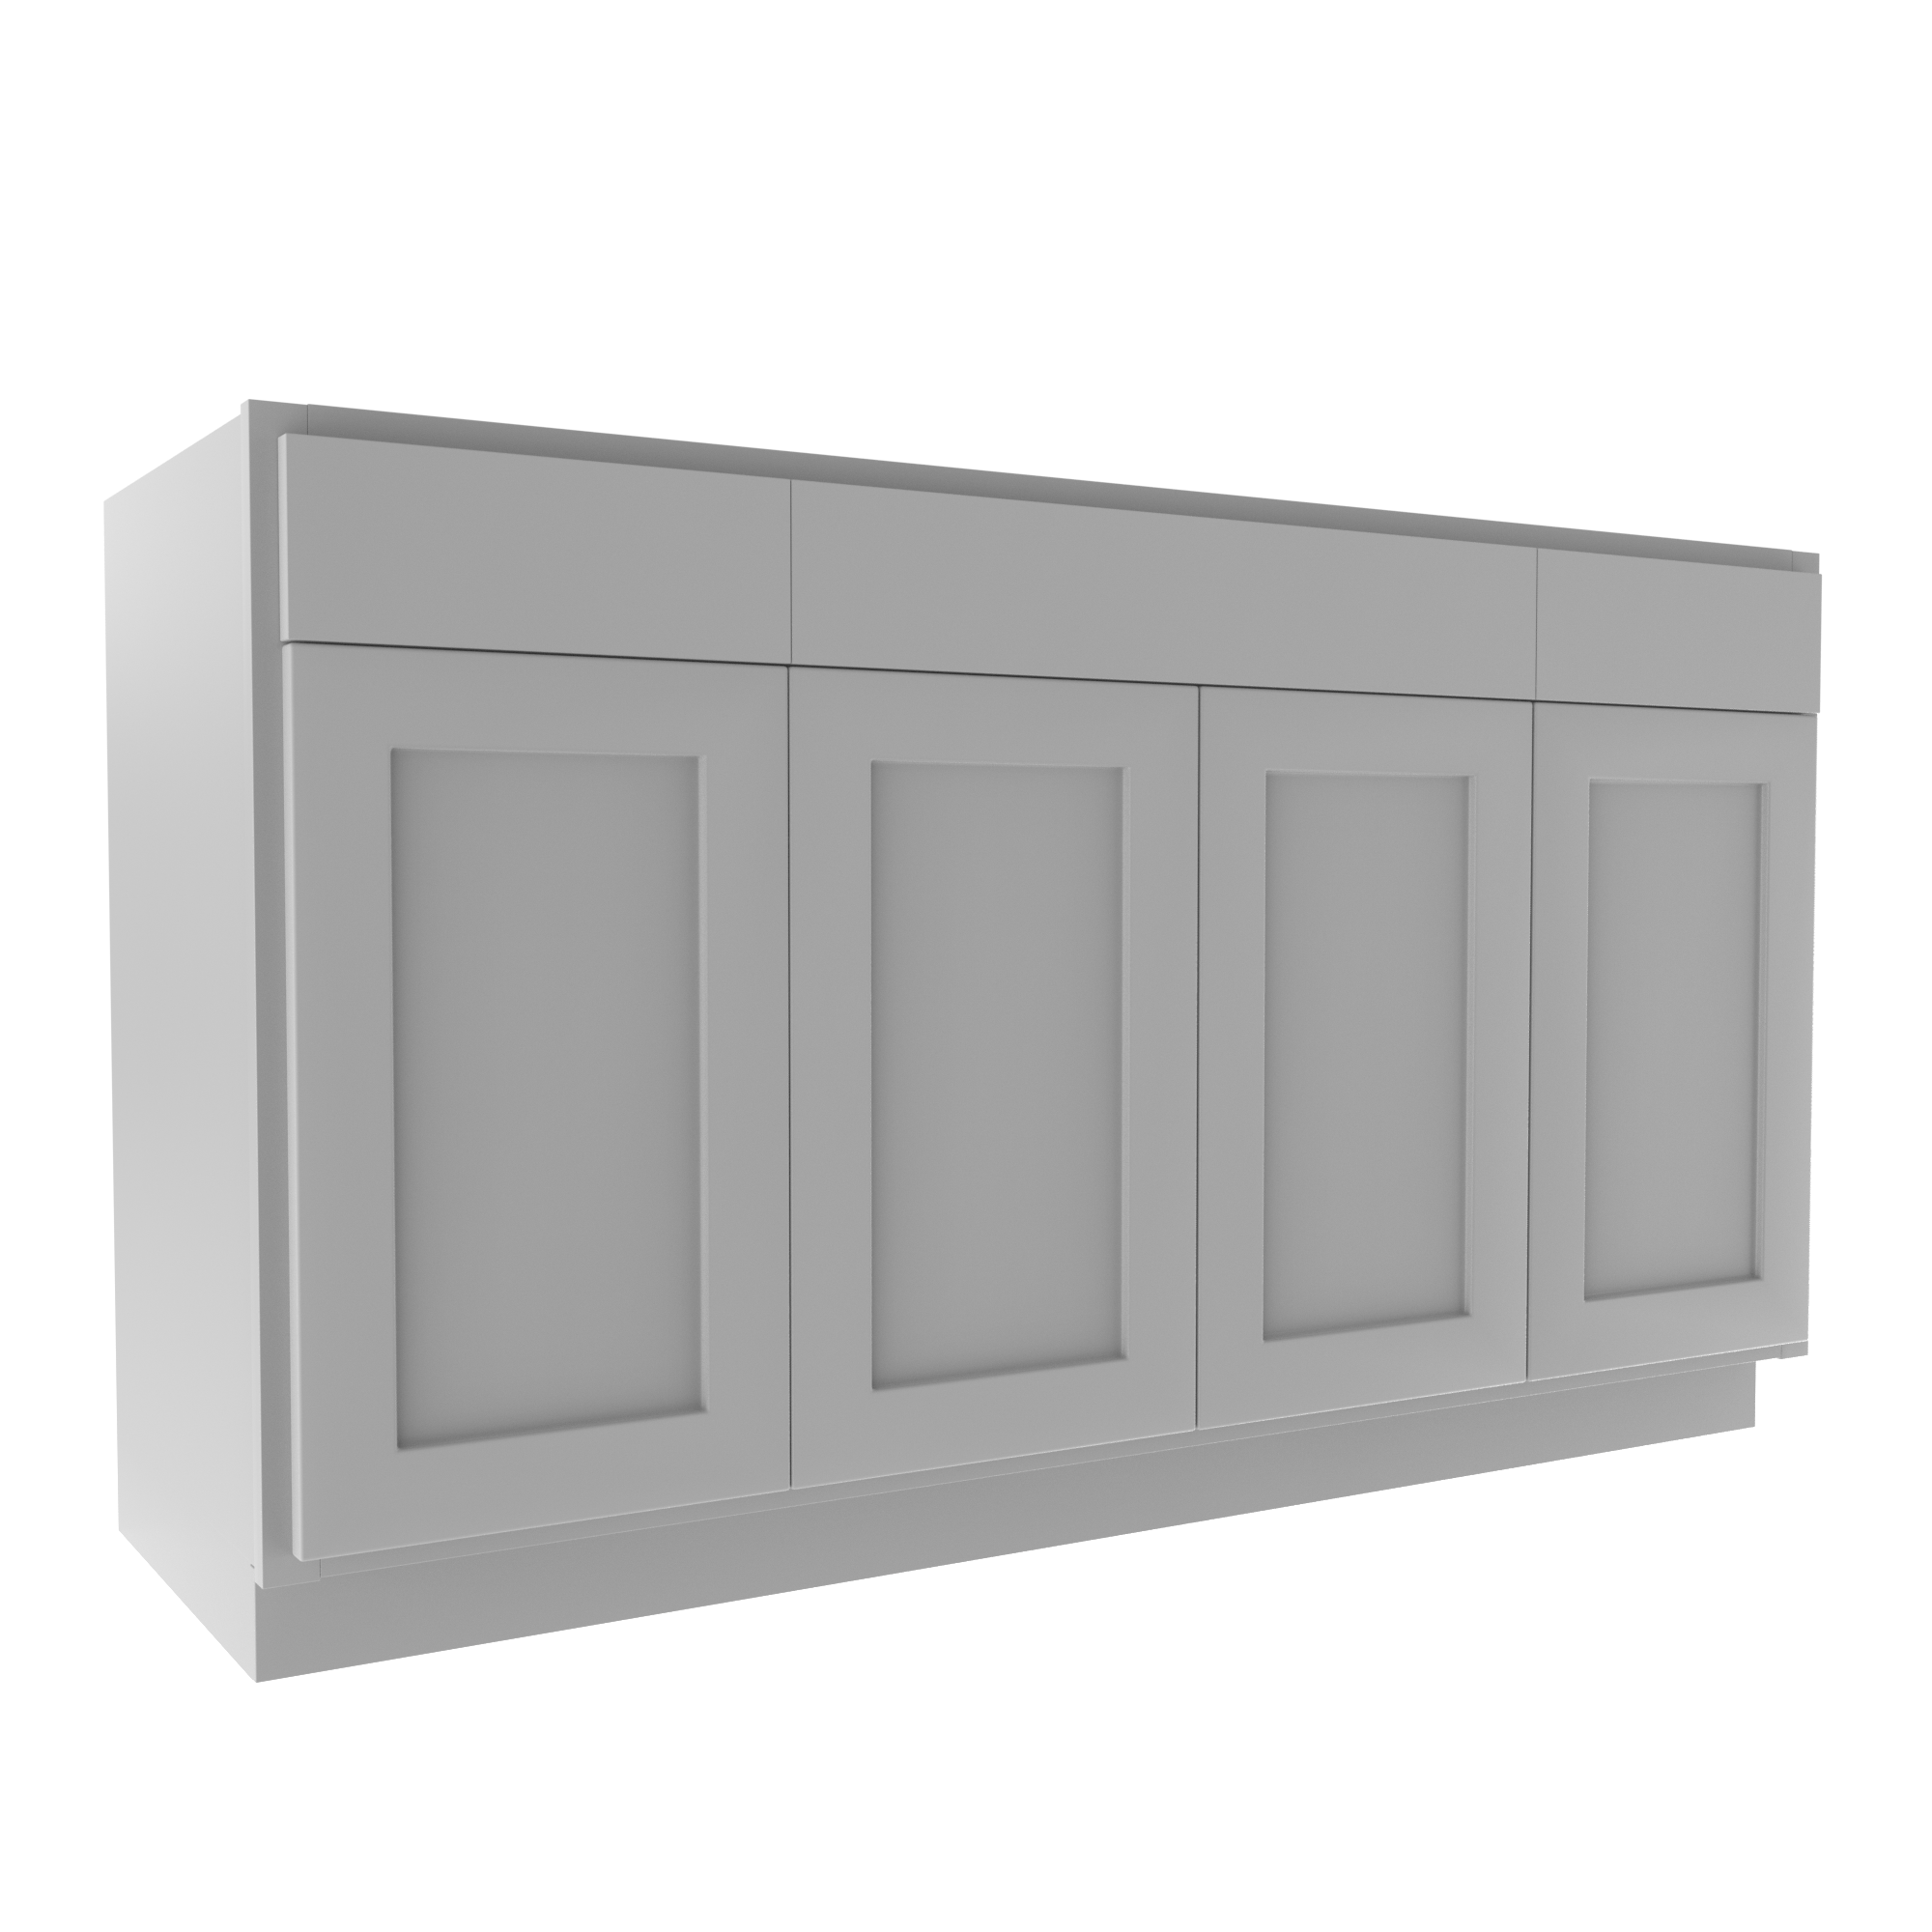 Luxor Misty Grey - 4 Door Vanity Base Cabinet | 60"W x 34.5"H x 21"D